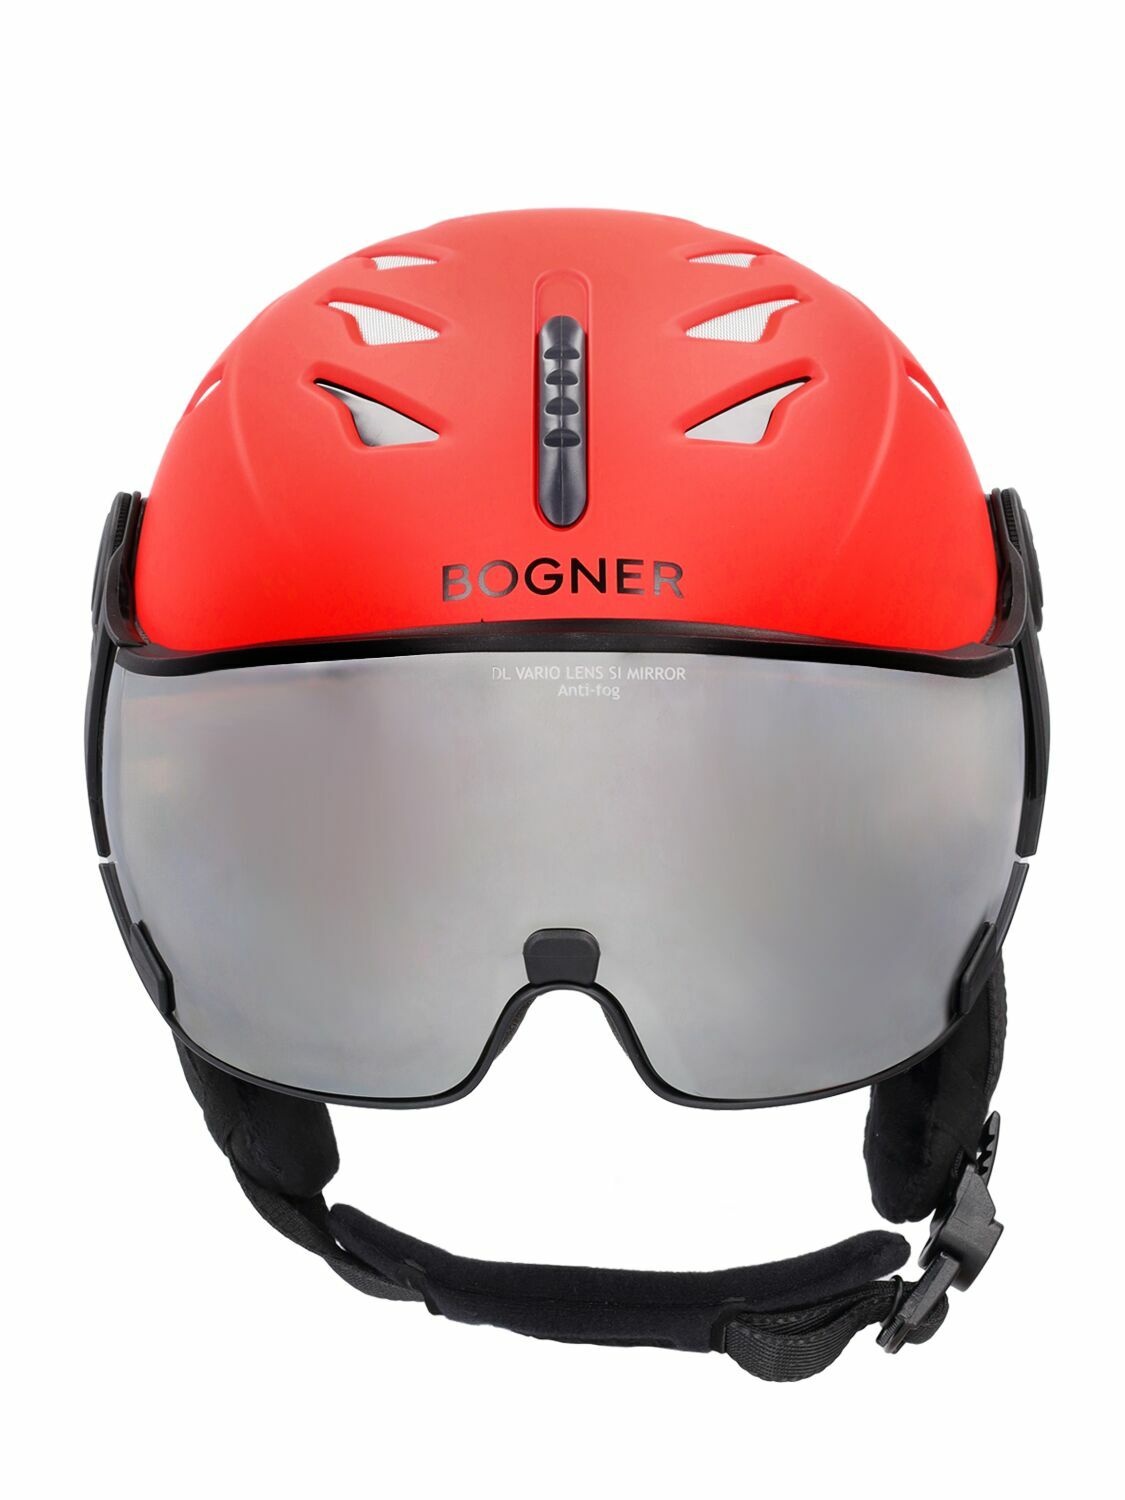 Photo: BOGNER - St. Moritz Ski Helmet W/ Visor